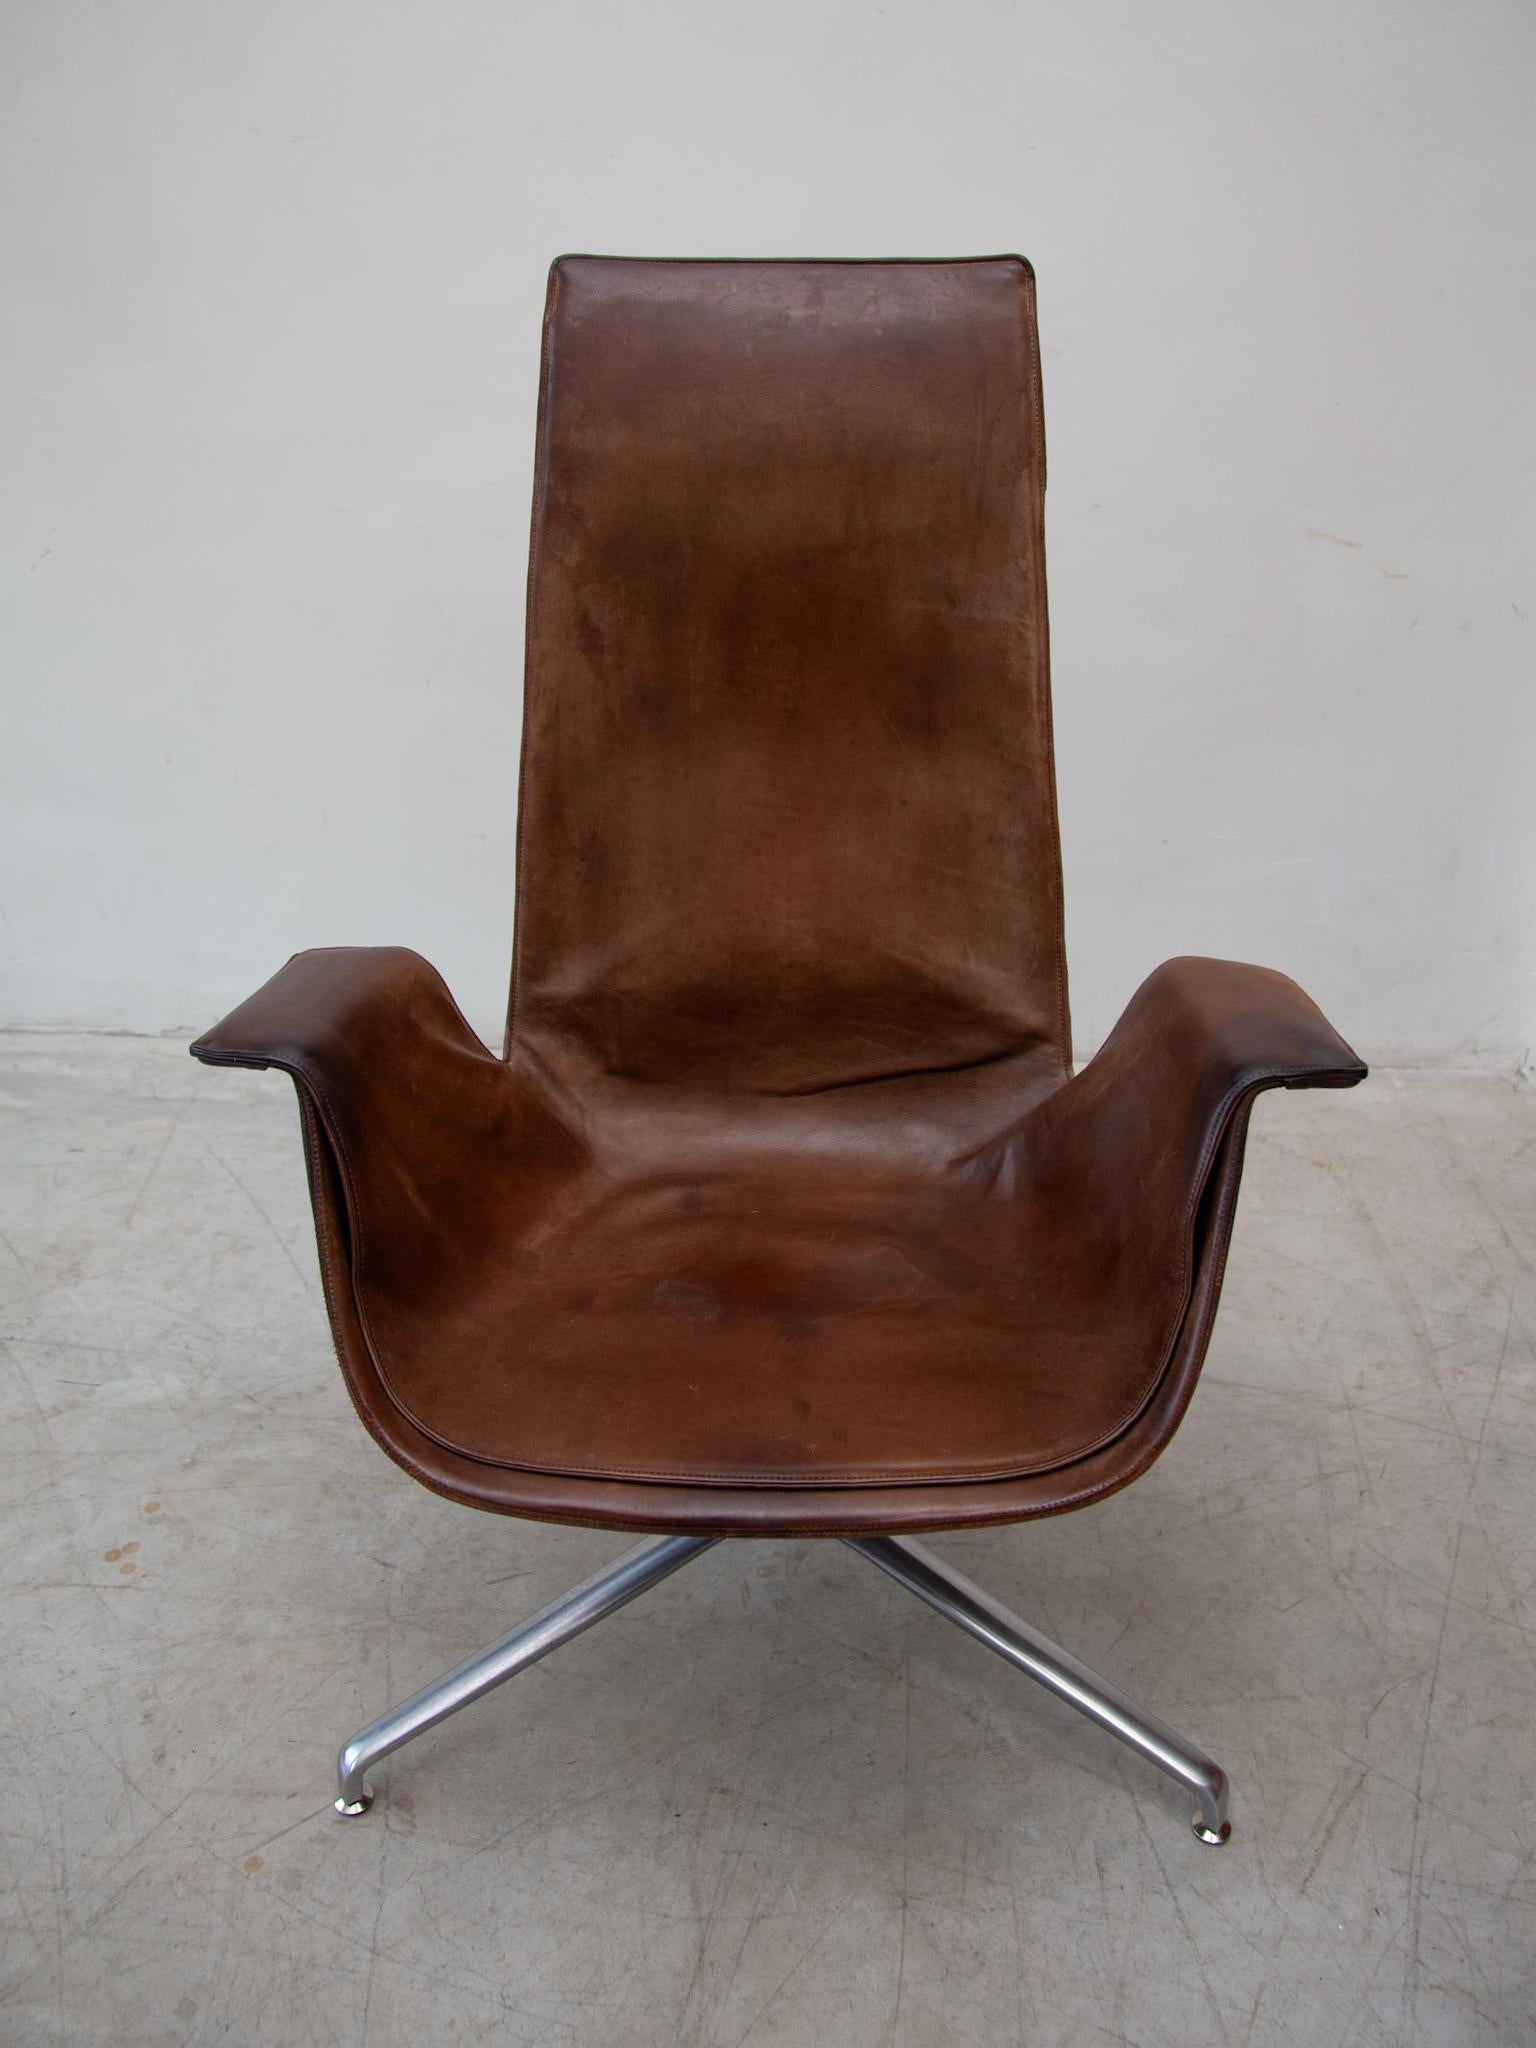 Eine zeitlose Skulptur der Moderne, schokoladenbraunes Leder schönen FK 6725 Lounge-Sessel im Jahr 1964 entworfen, erhielt das Modell einen Bundespreis für gute Form. Als Meeting-Loungesessel, entworfen von Preben Fabricius und Jörgen Kastholm,